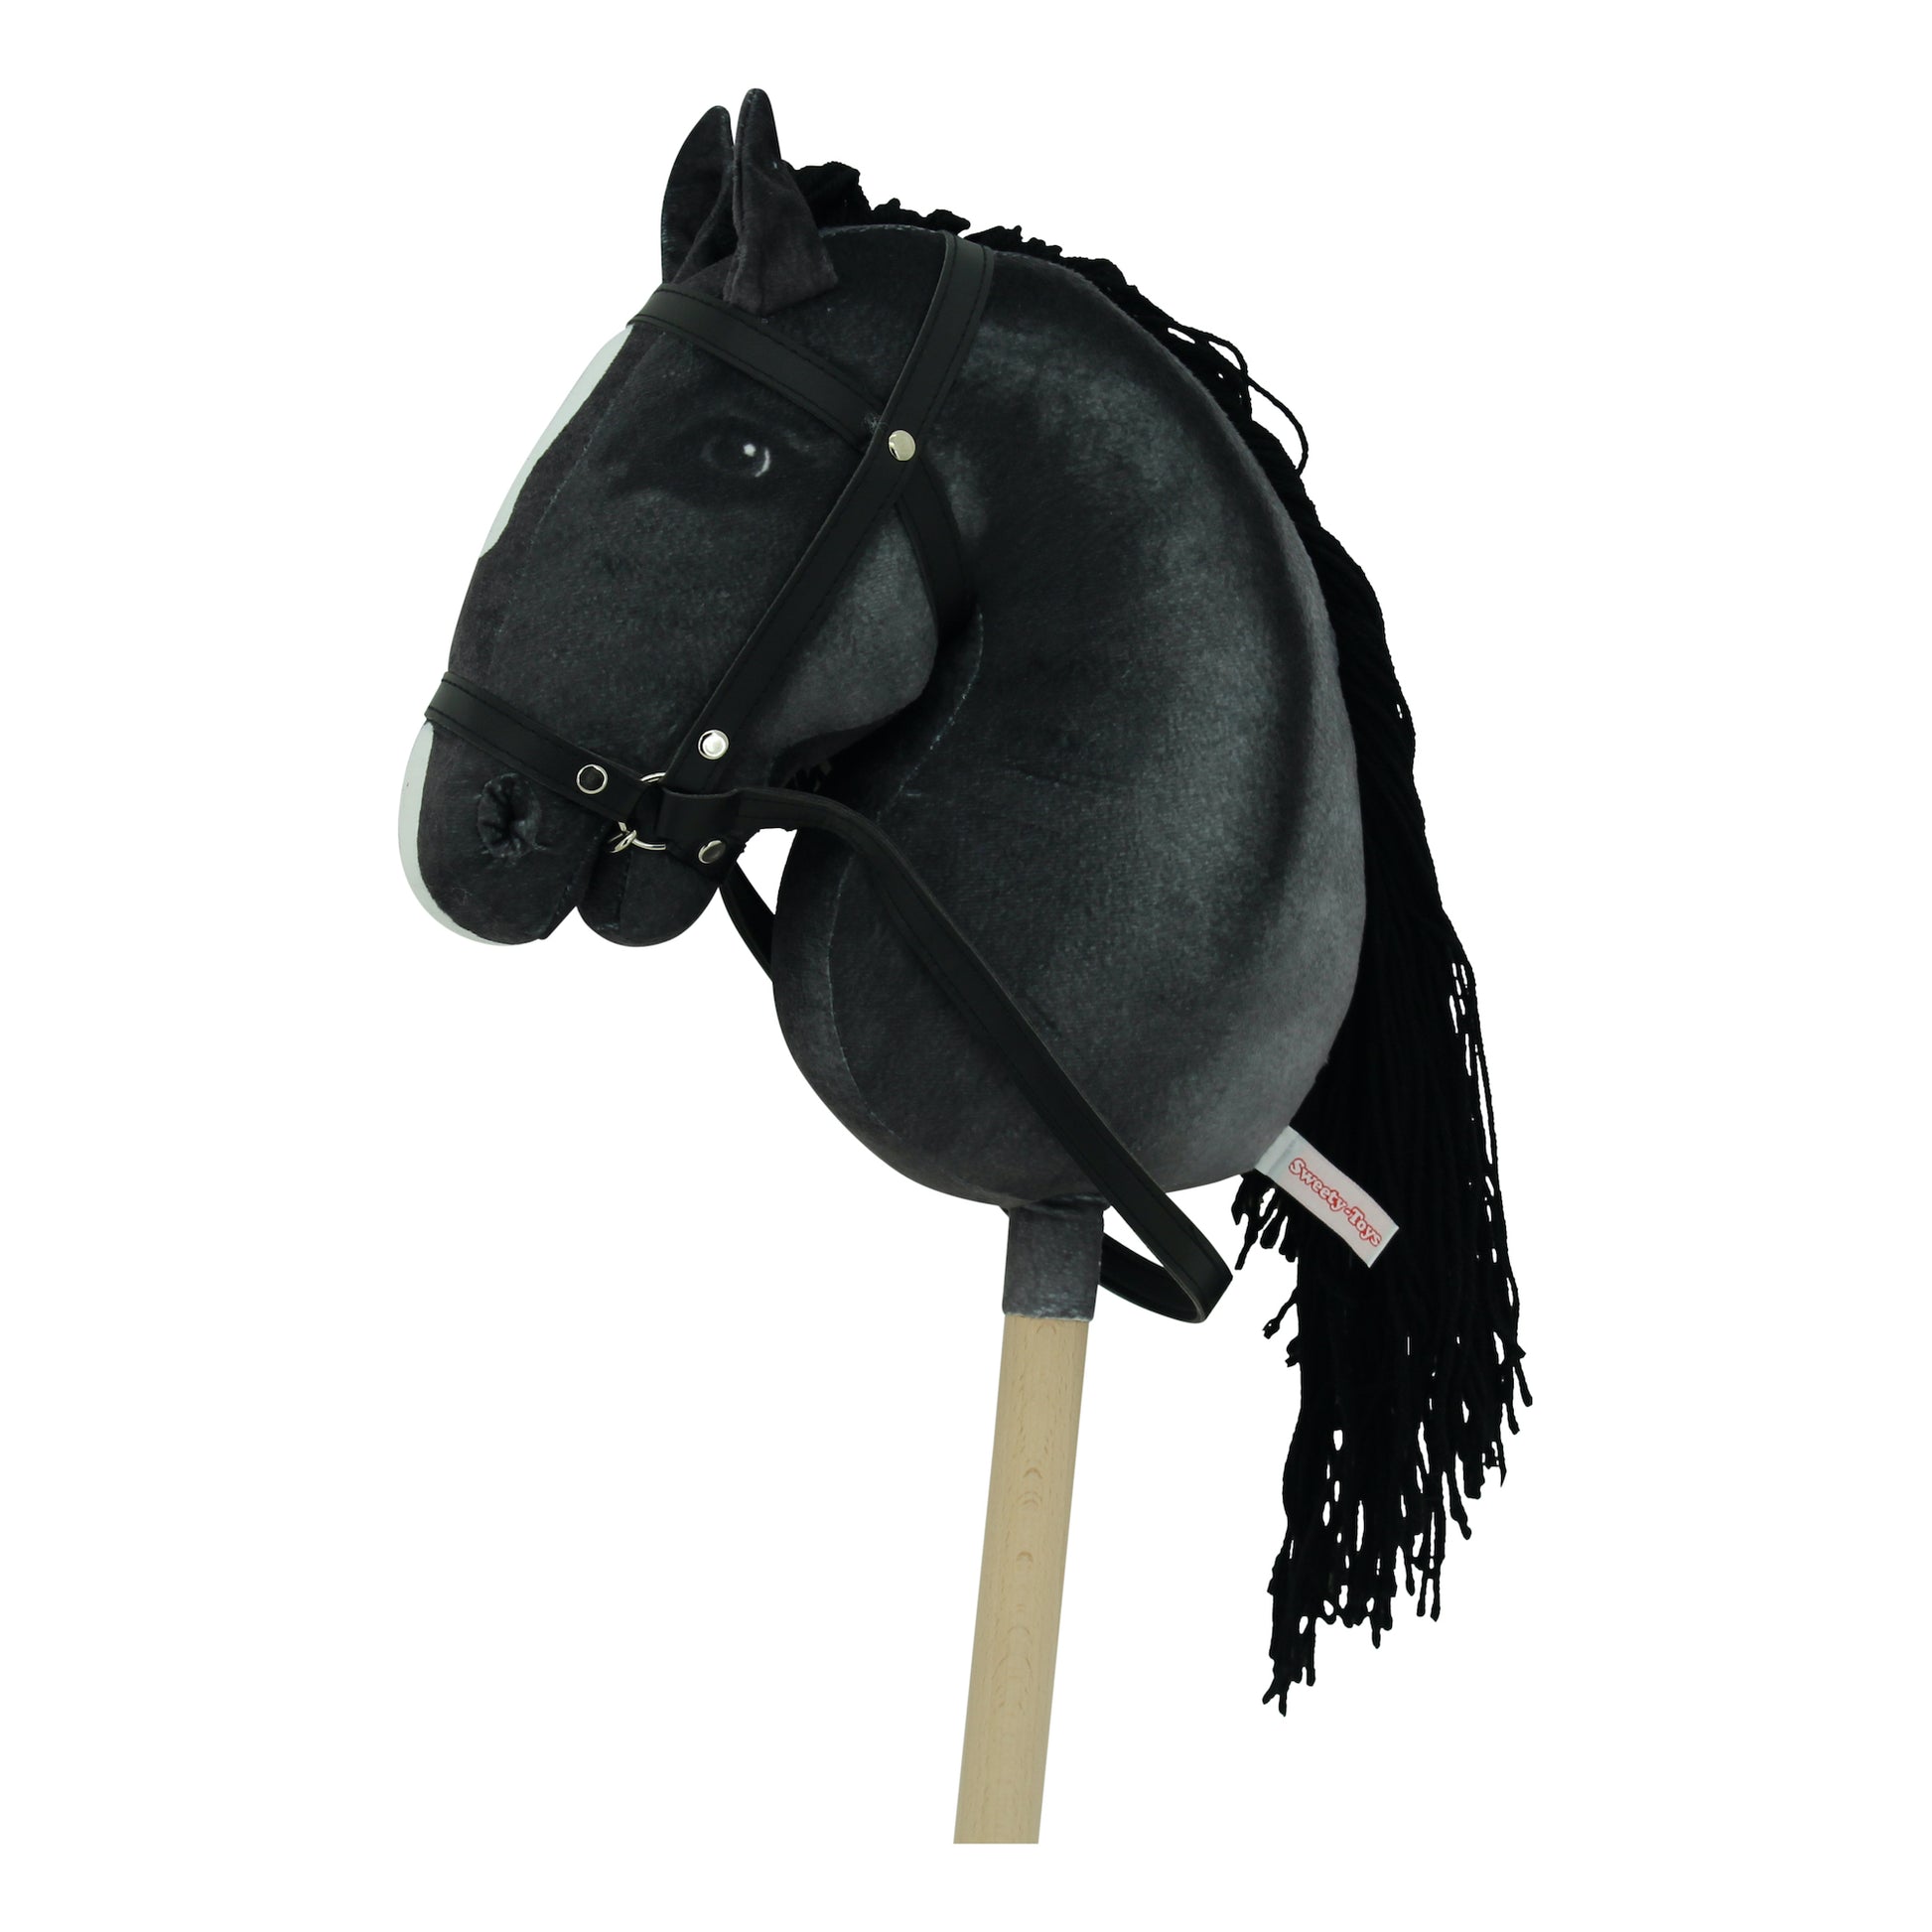 Sweety Toys Blacky - Testa di cavallo su bastone, con effetti sonori,  colore: nero con criniera bianca Premendo le orecchie si possono sentire i